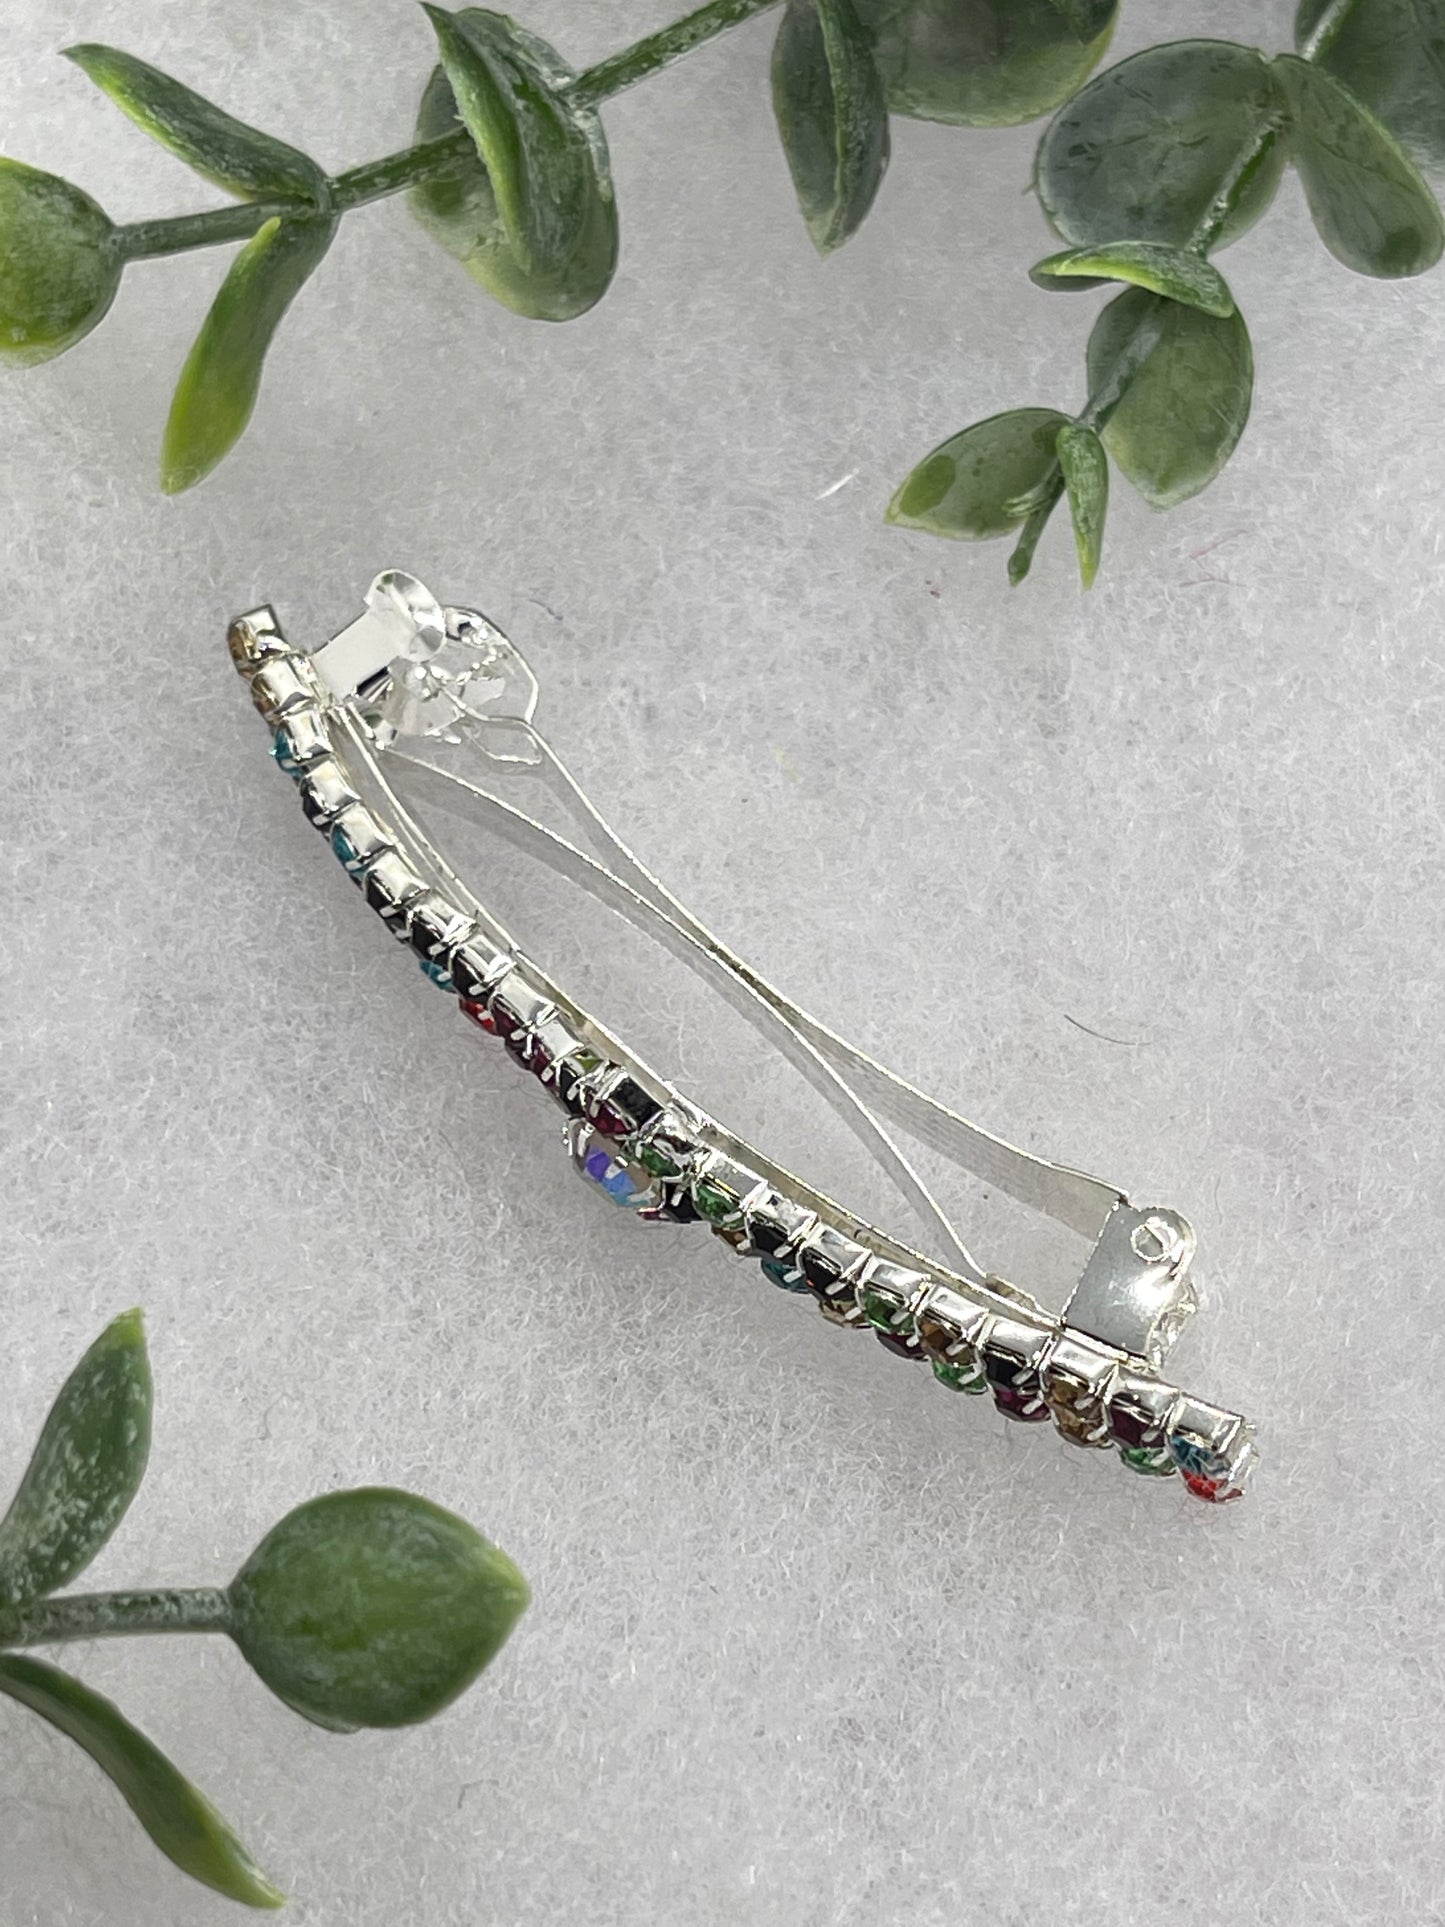 Rainbow Crystal Rhinestone  barrette approximately 3.0” silver tone formal hair accessory gift wedding bridal Hair accessory